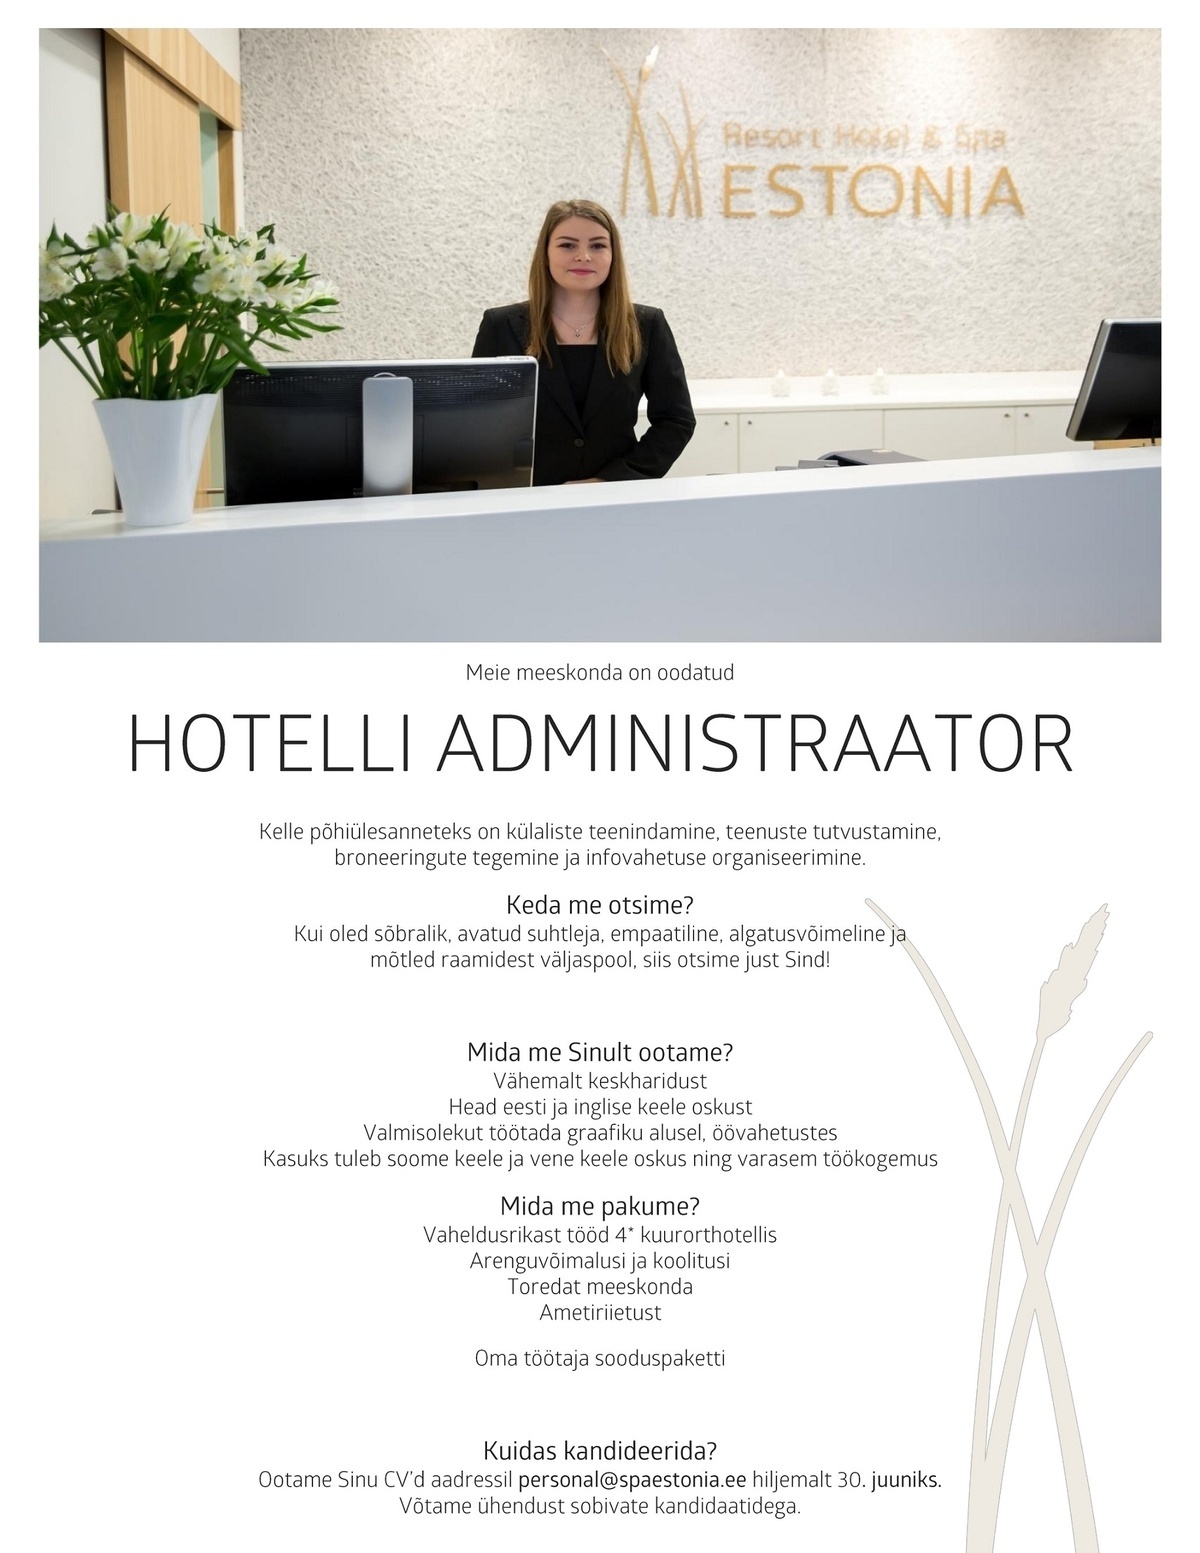 Estonia Spa Hotels AS Vastuvõtuadministraator